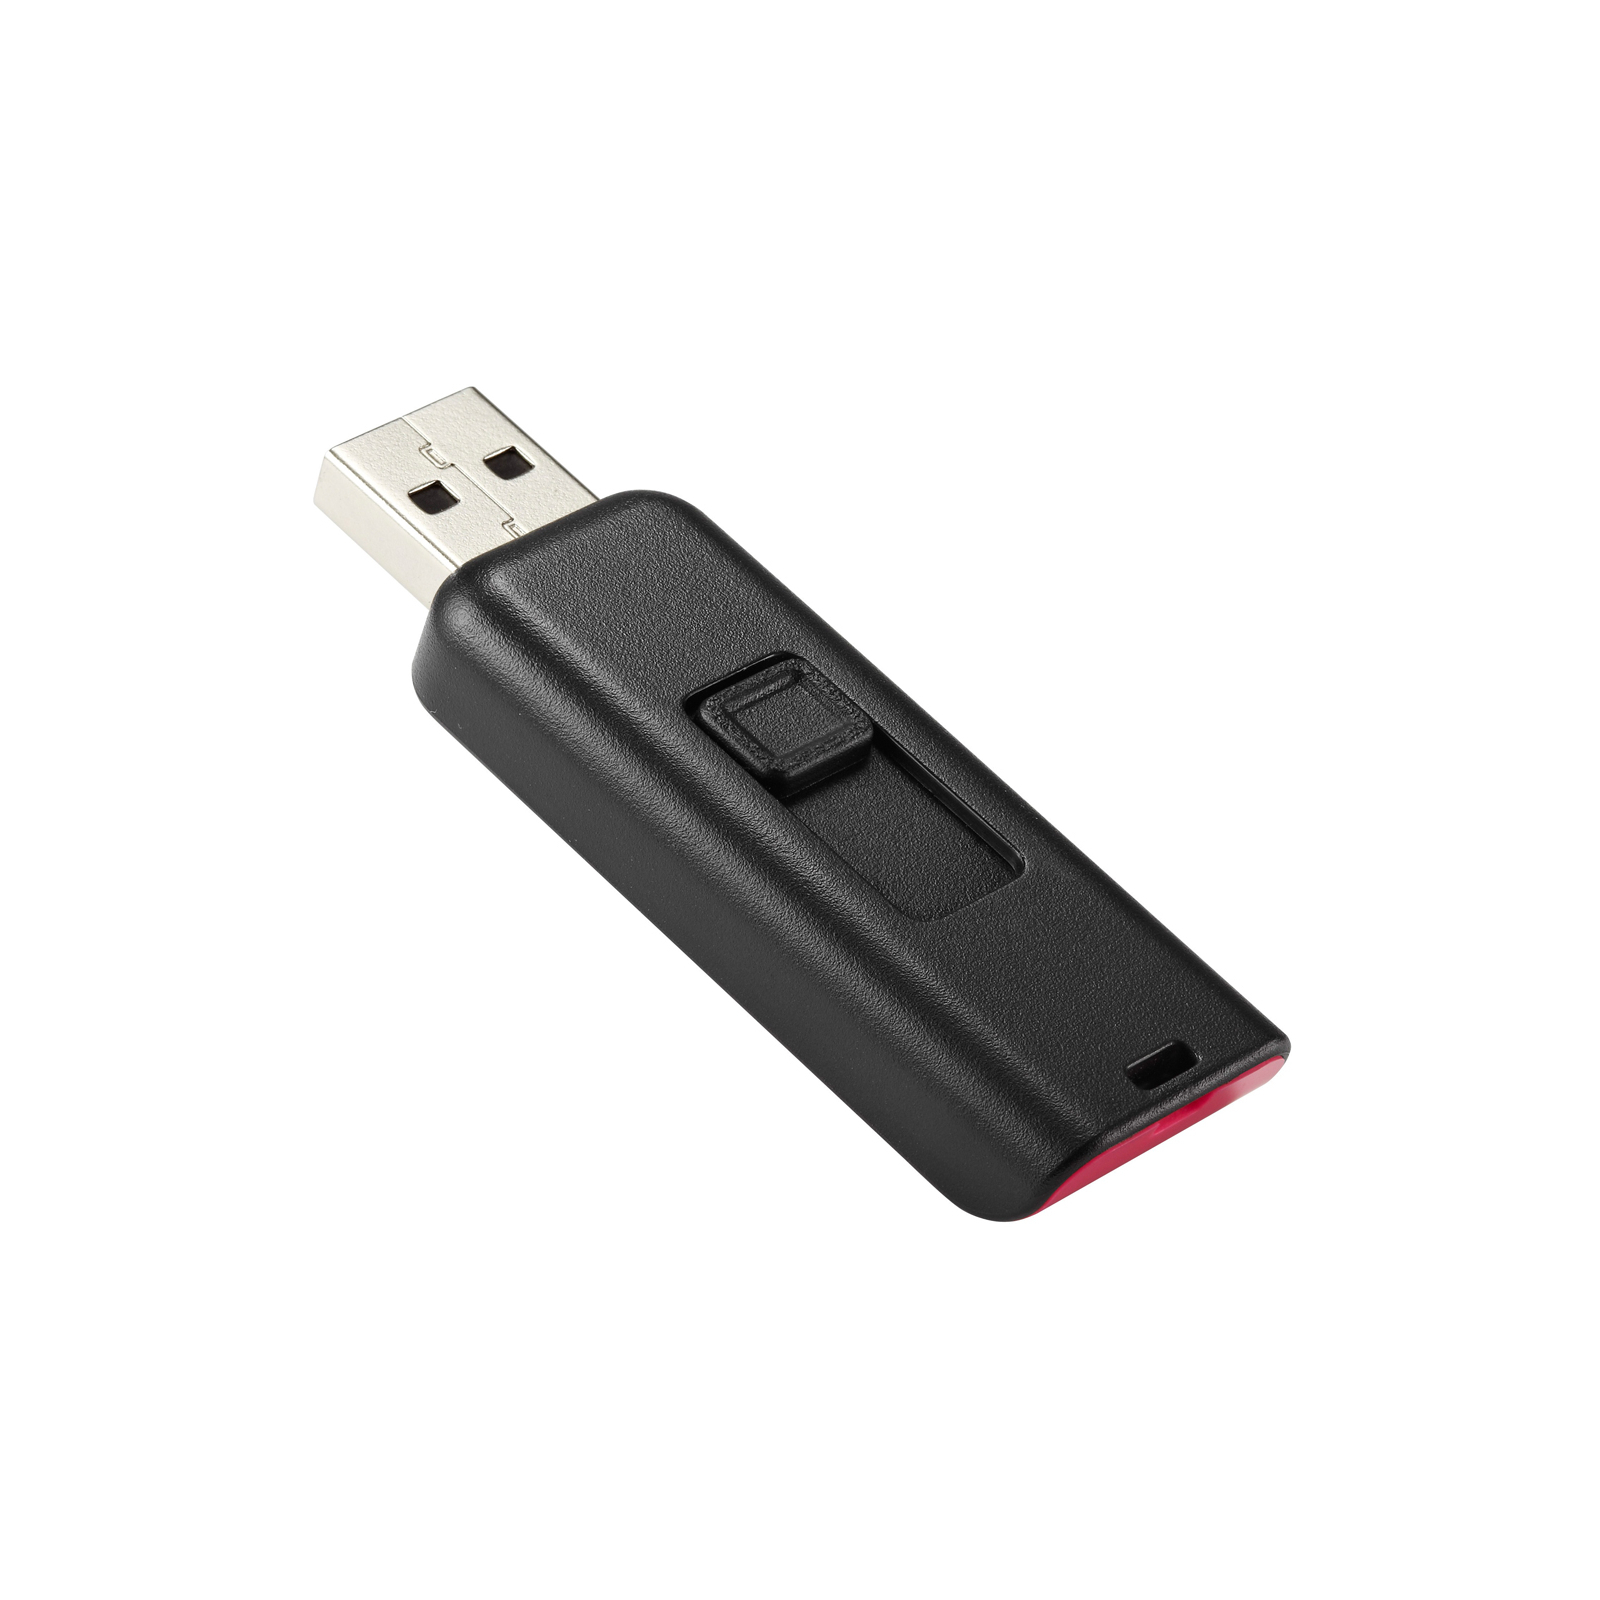 USB флеш накопитель Apacer 4GB AH334 pink USB 2.0 (AP4GAH334P-1) изображение 6